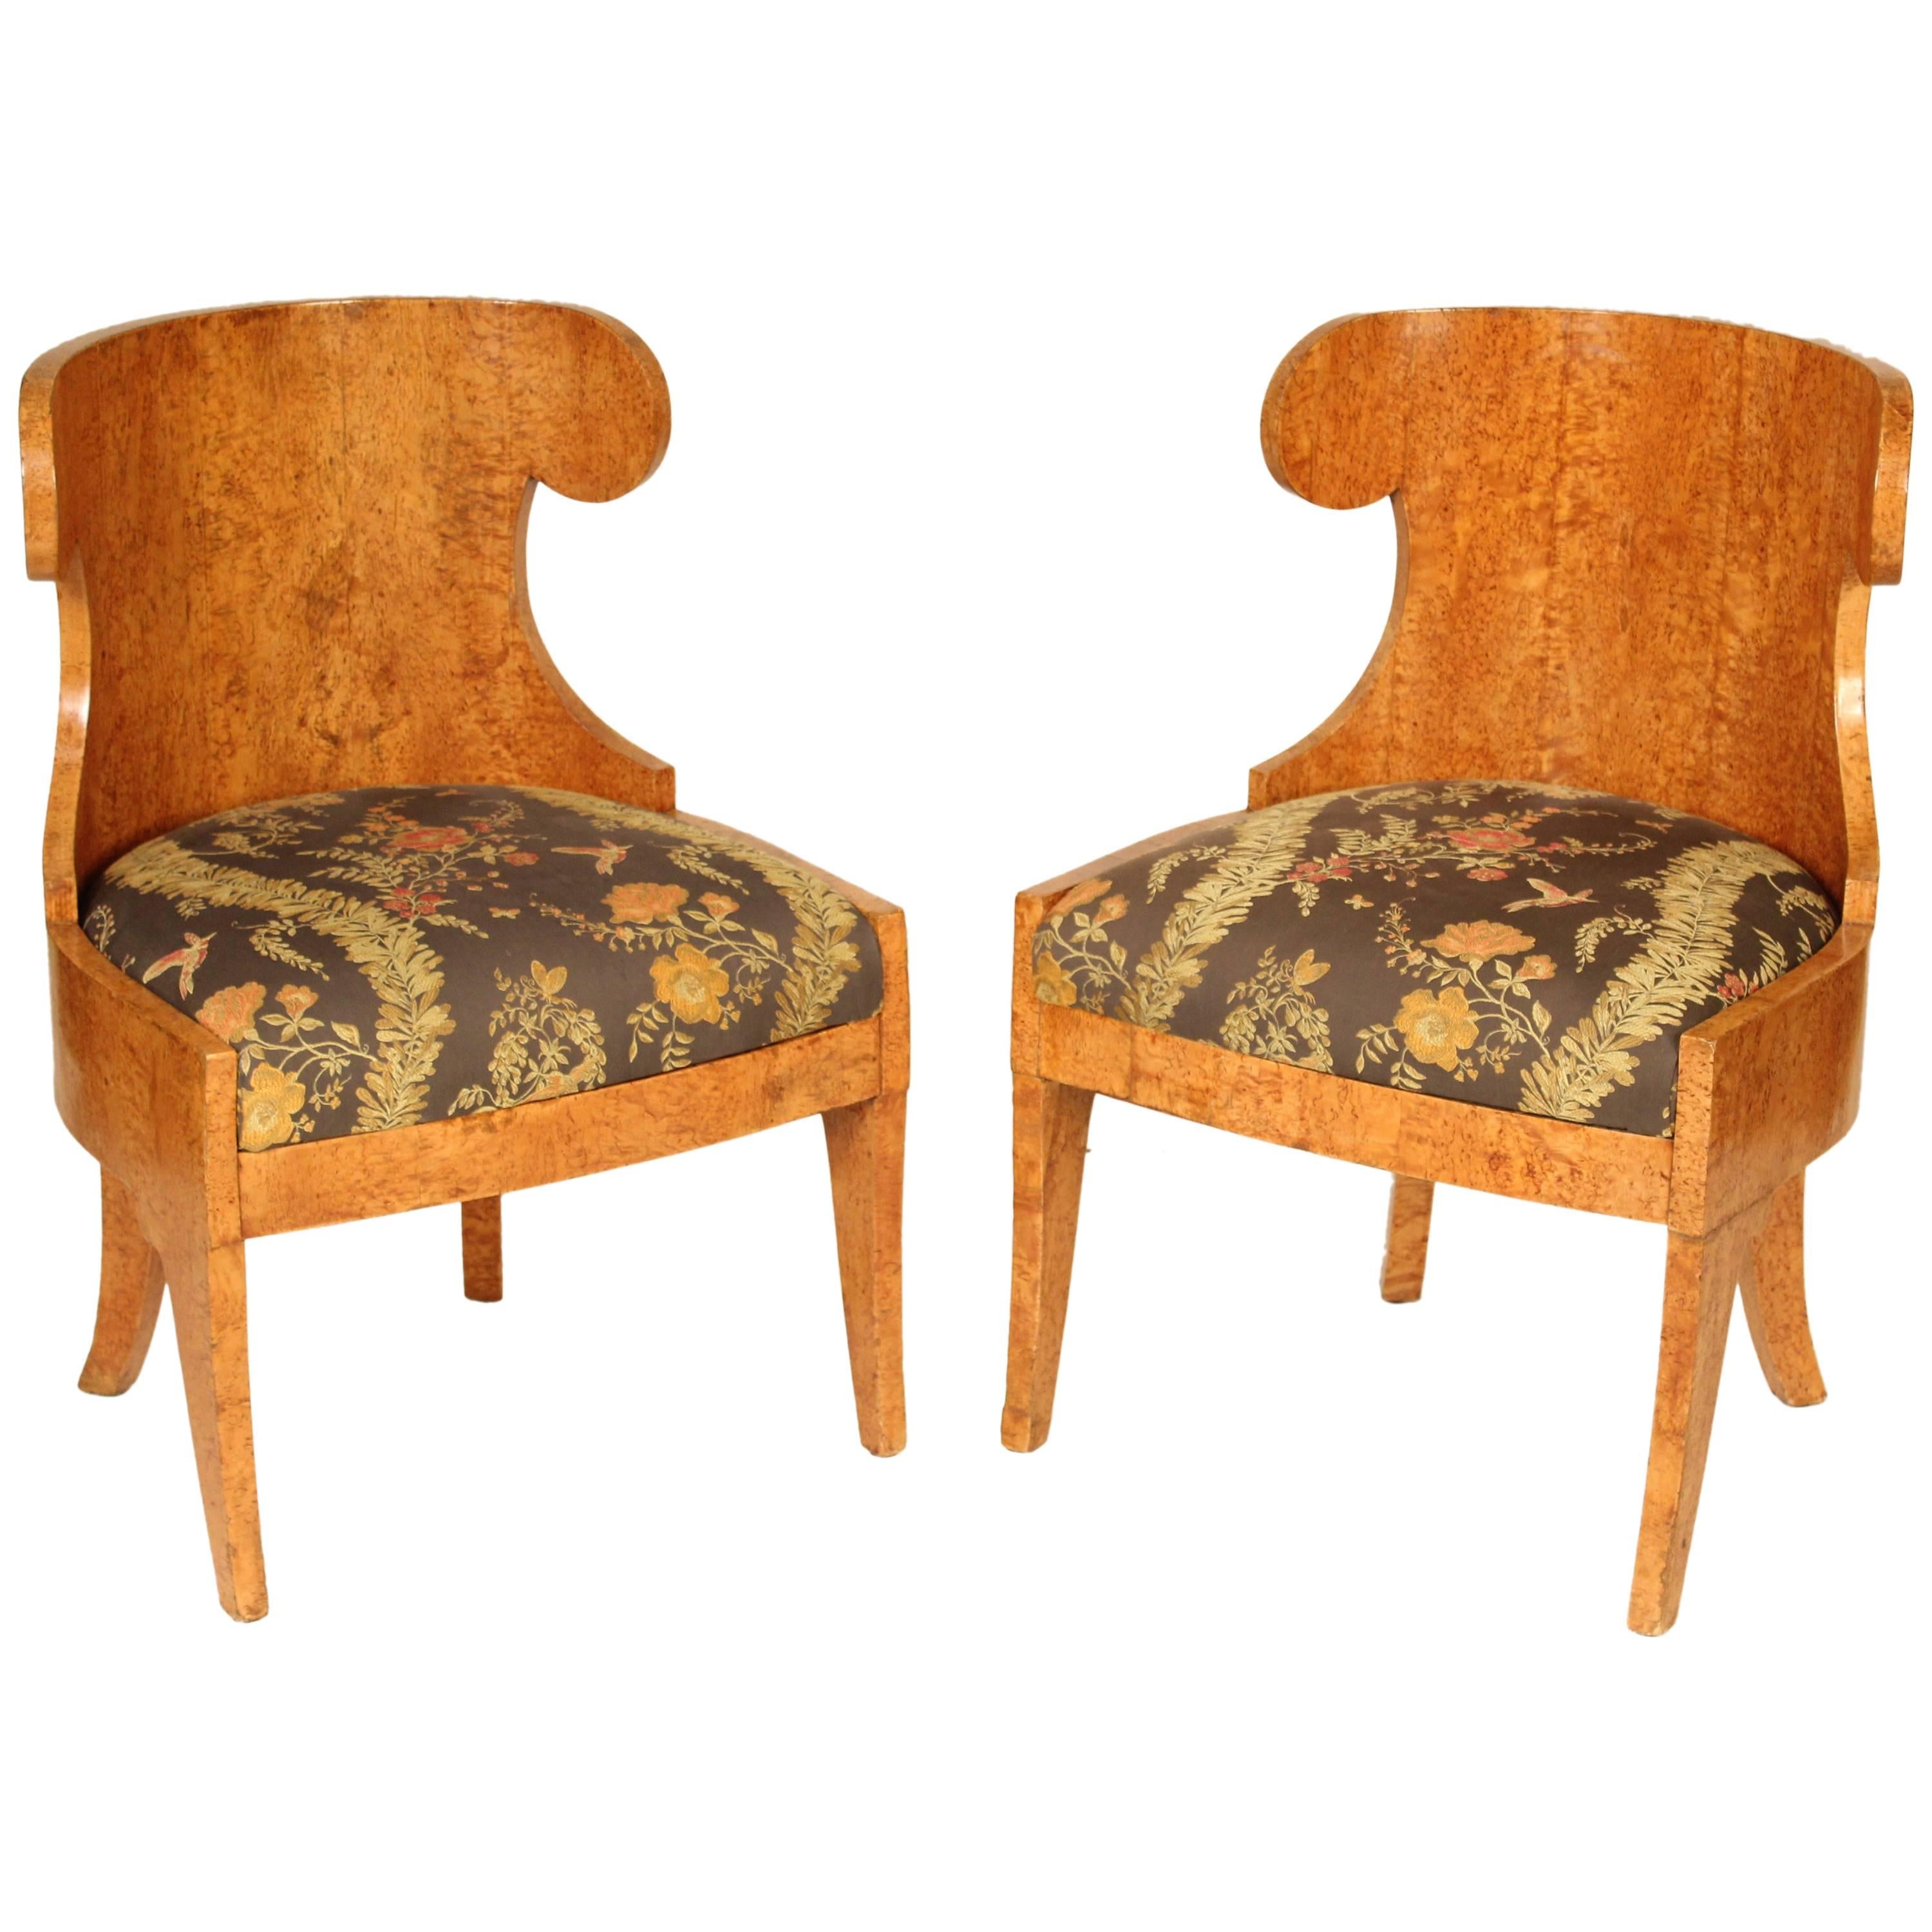 Pair of Biedermeier Burl Elm Chairs